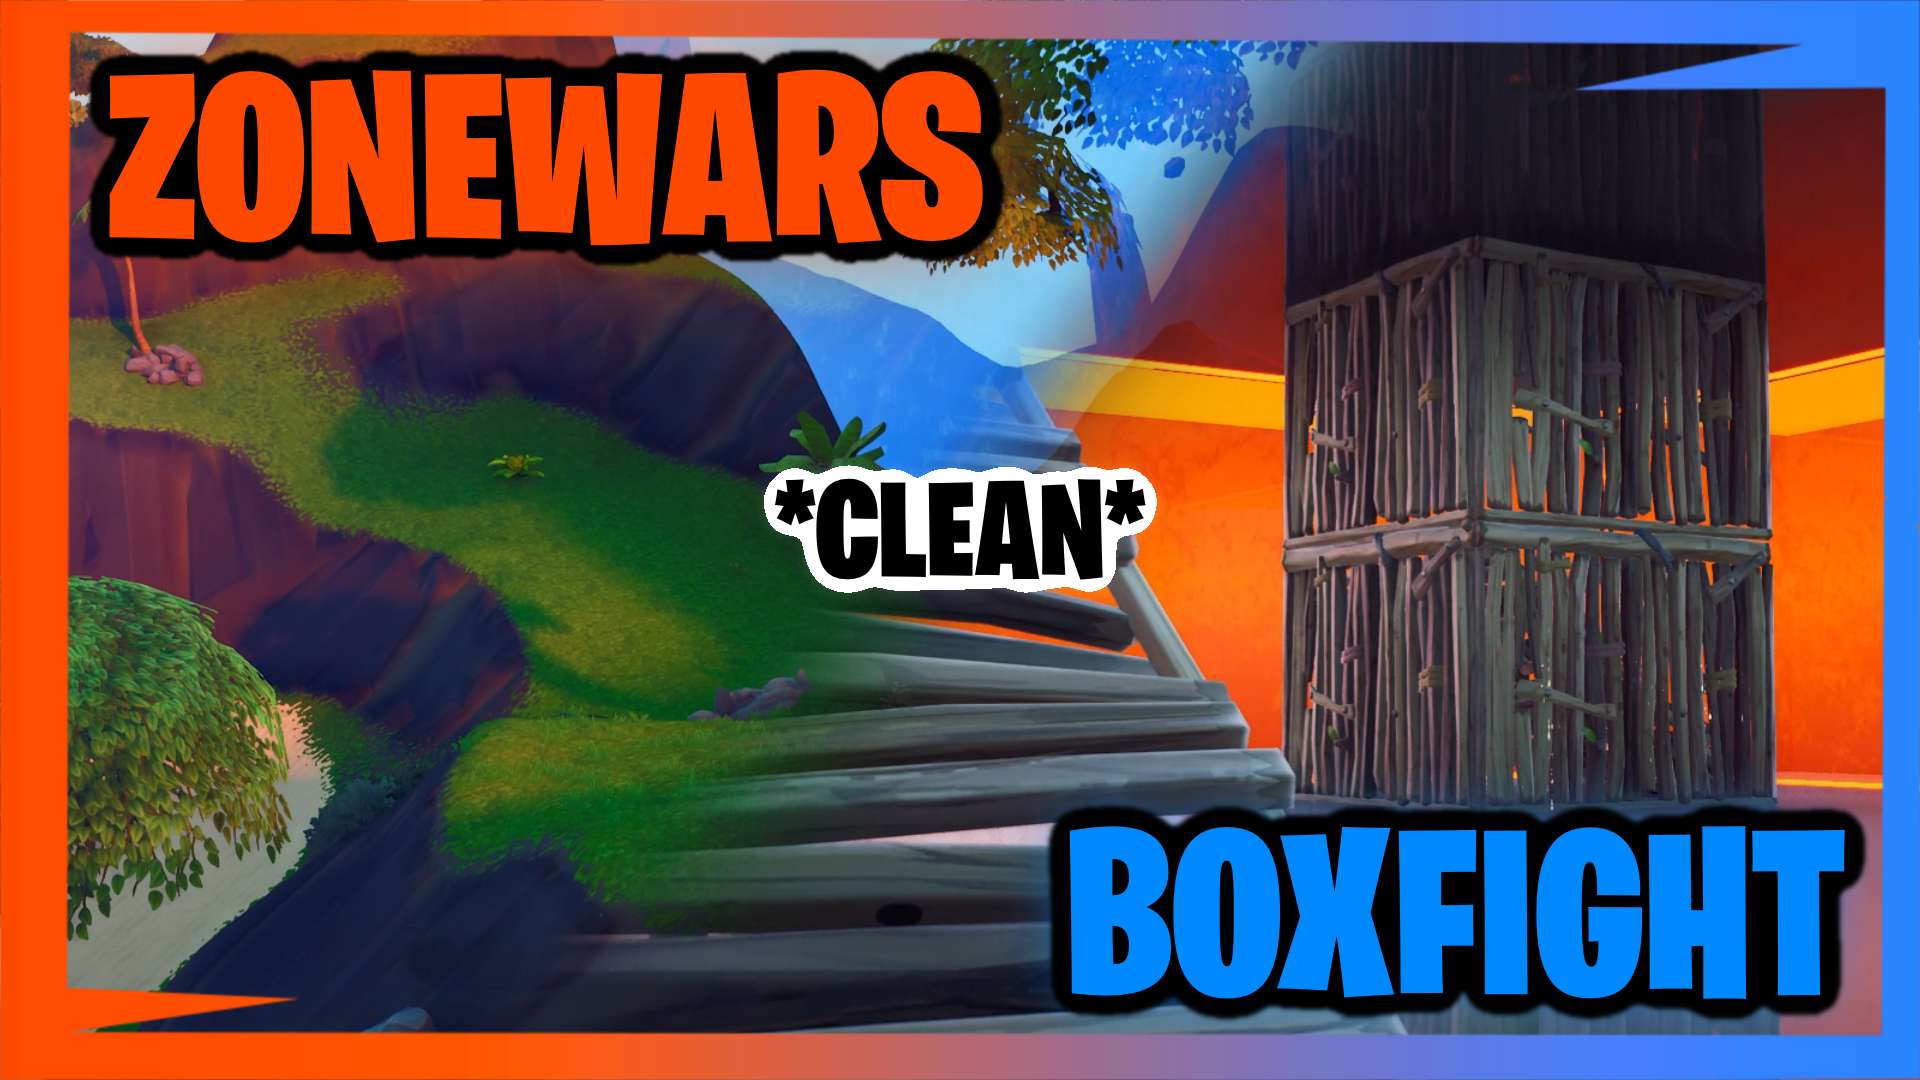 BOX FIGHT & ZONEWARS *CLEAN* | MRORANGE9